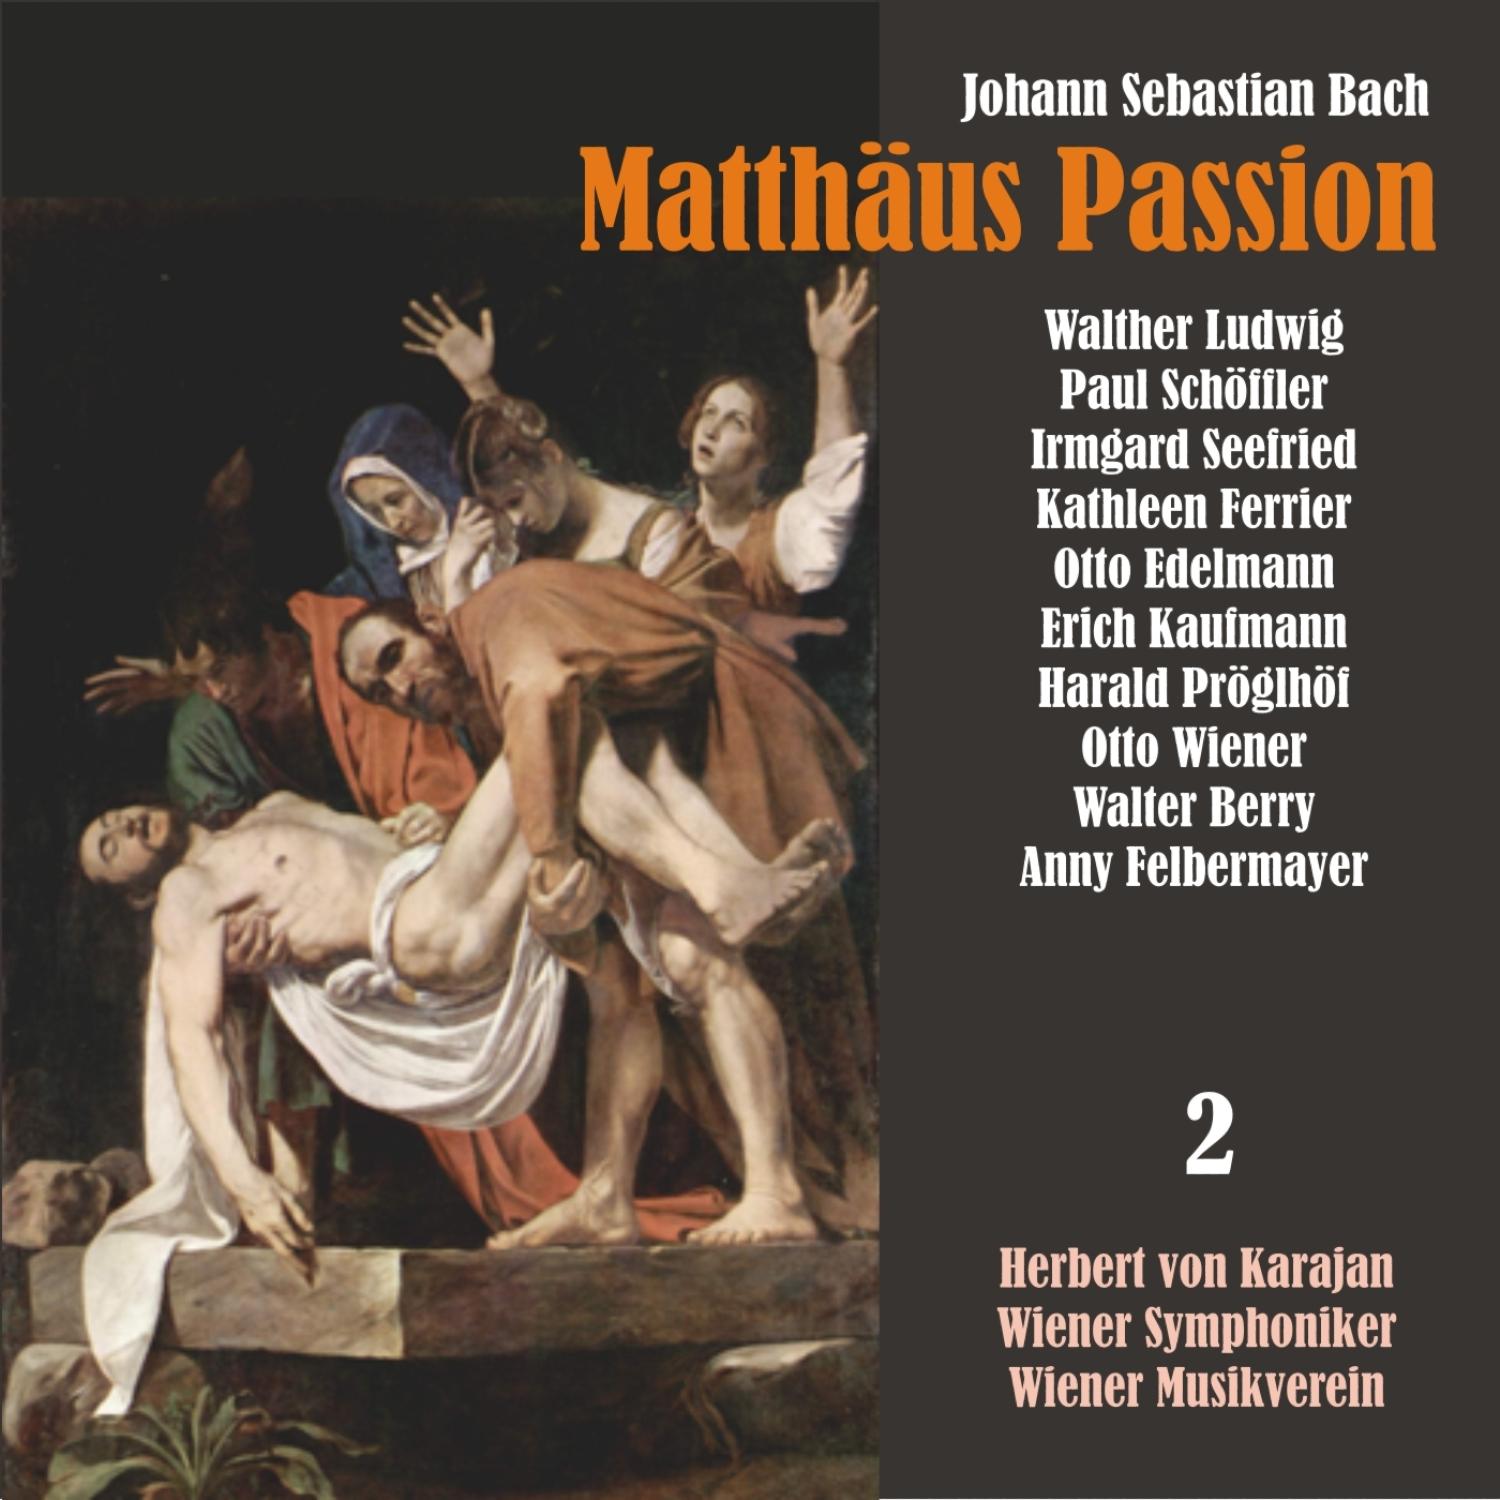 Matthäus Passion, BWV 244: "Sie hielten aber einen Rat"